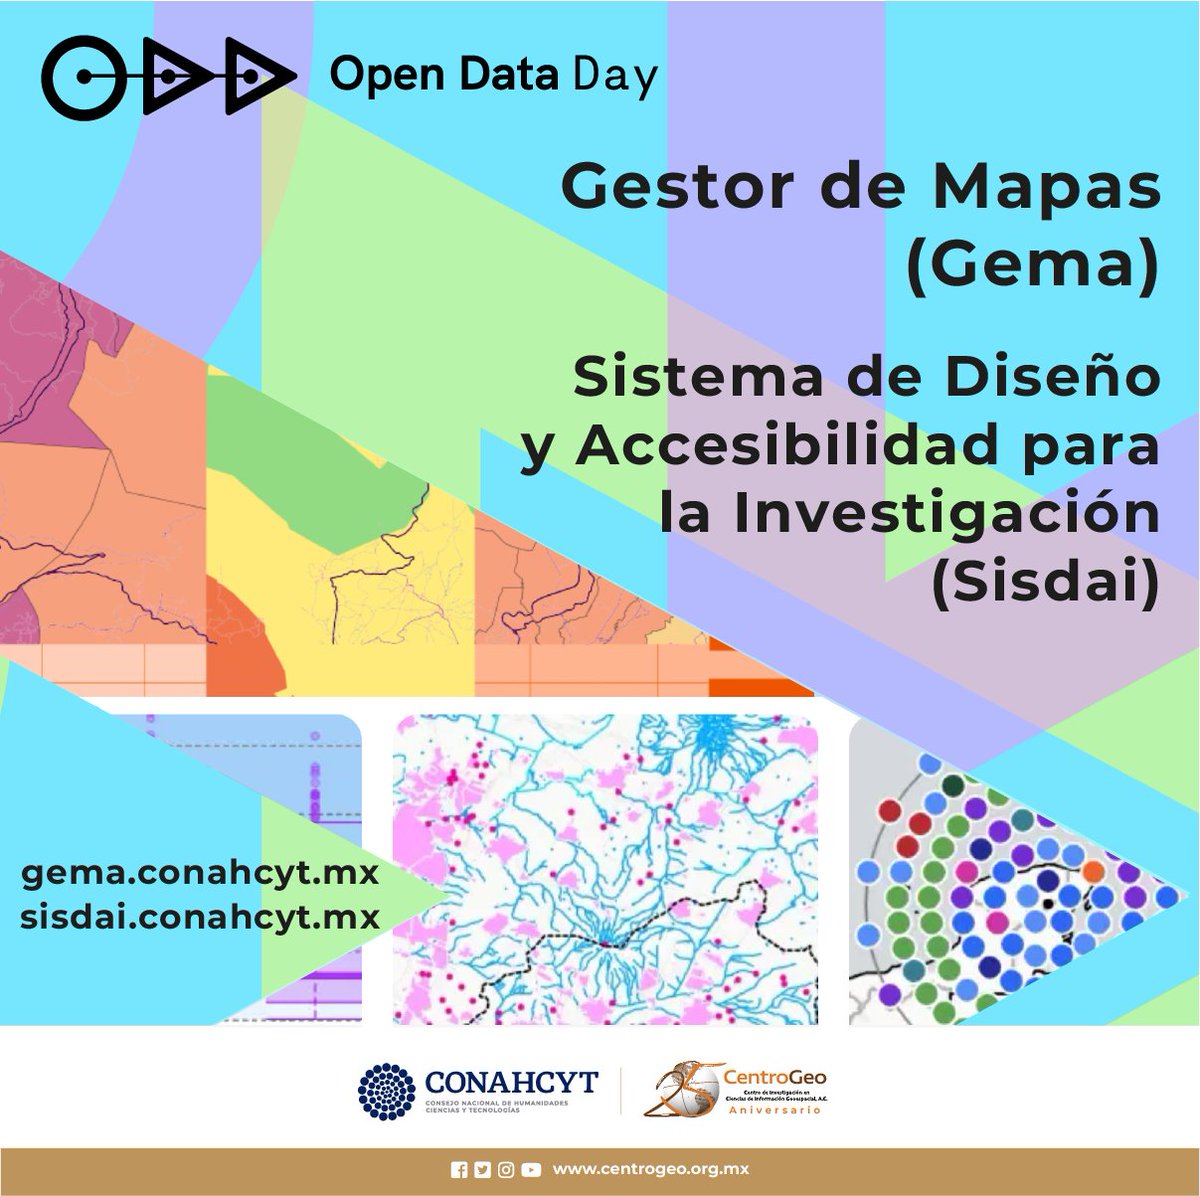 ¡Feliz día de los datos abiertos! Nos vemos al ratito en #Nativo en el #ODD2024 con @socialtic #Gema #Sisdai

gema.conahcyt.mx
sisdai.conahcyt.mx